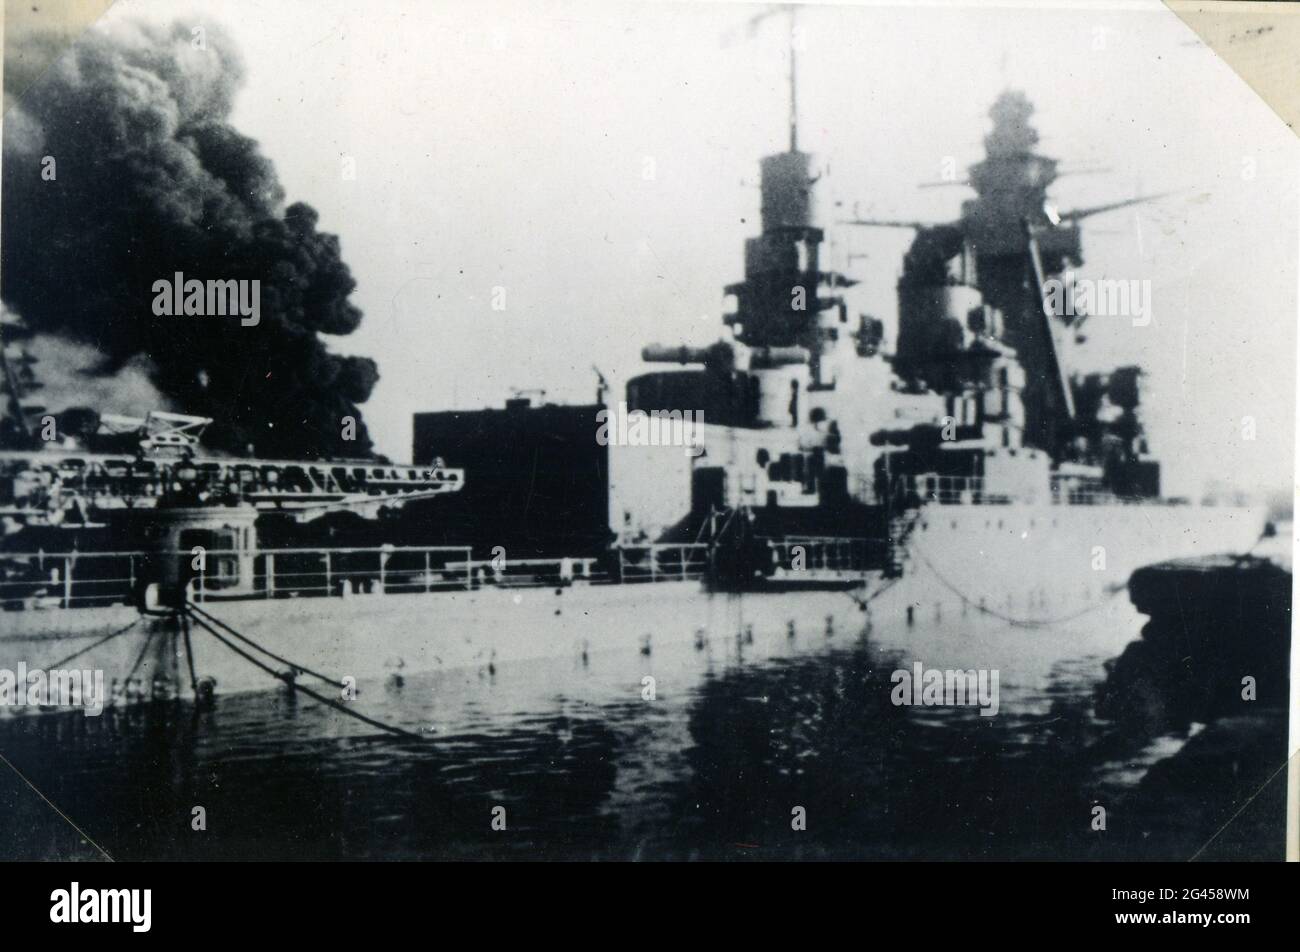 Événements: Deuxième Guerre mondiale / Seconde Guerre mondiale, France, scutling de la flotte française à Toulon, 27.11.1942, navires de guerre endommagés Strasbourg Banque D'Images